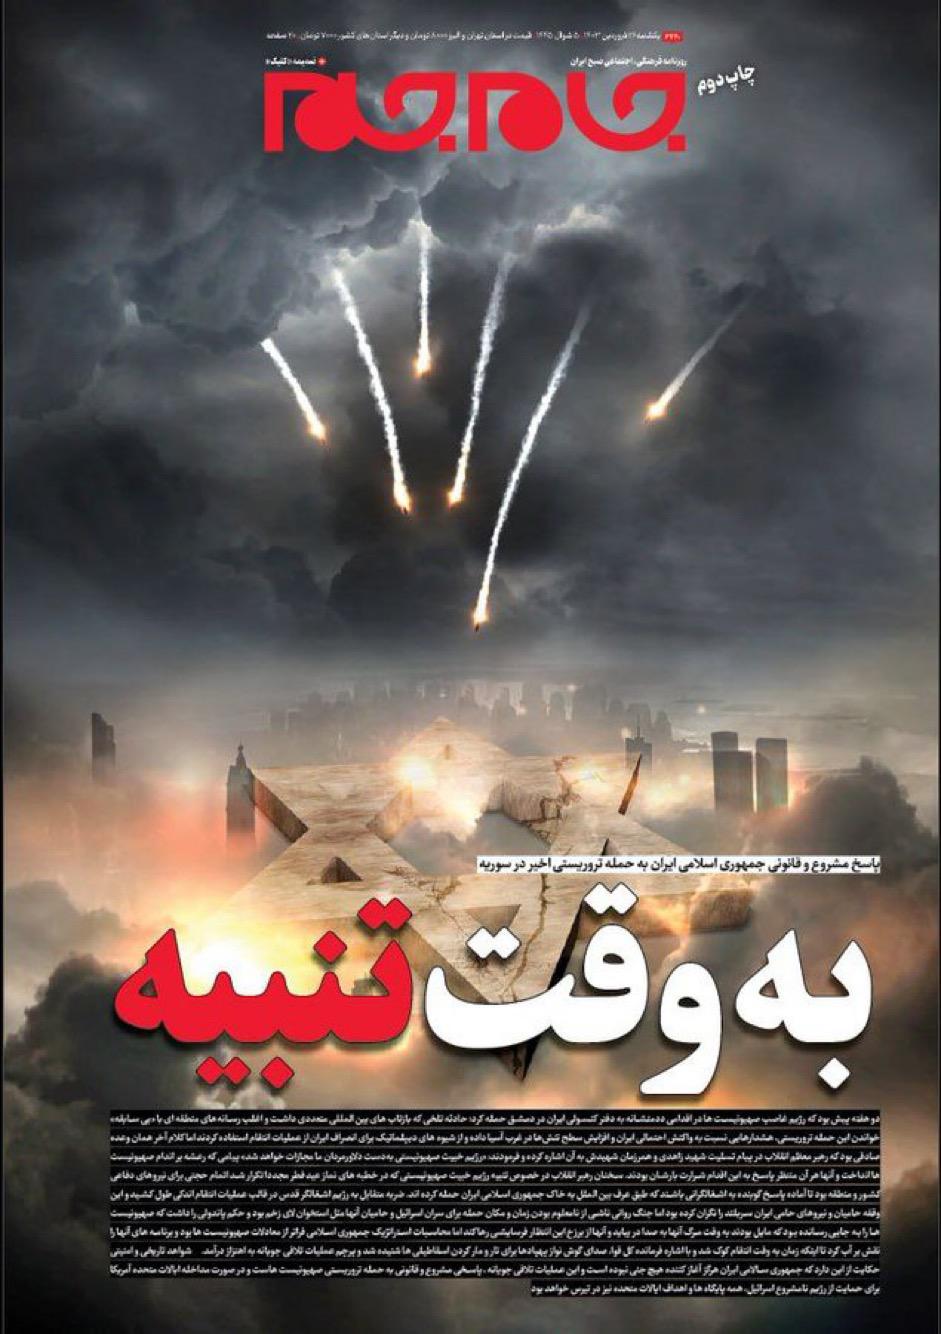 השער של העיתון האיראני ג'אמגם: בזמן הענישה